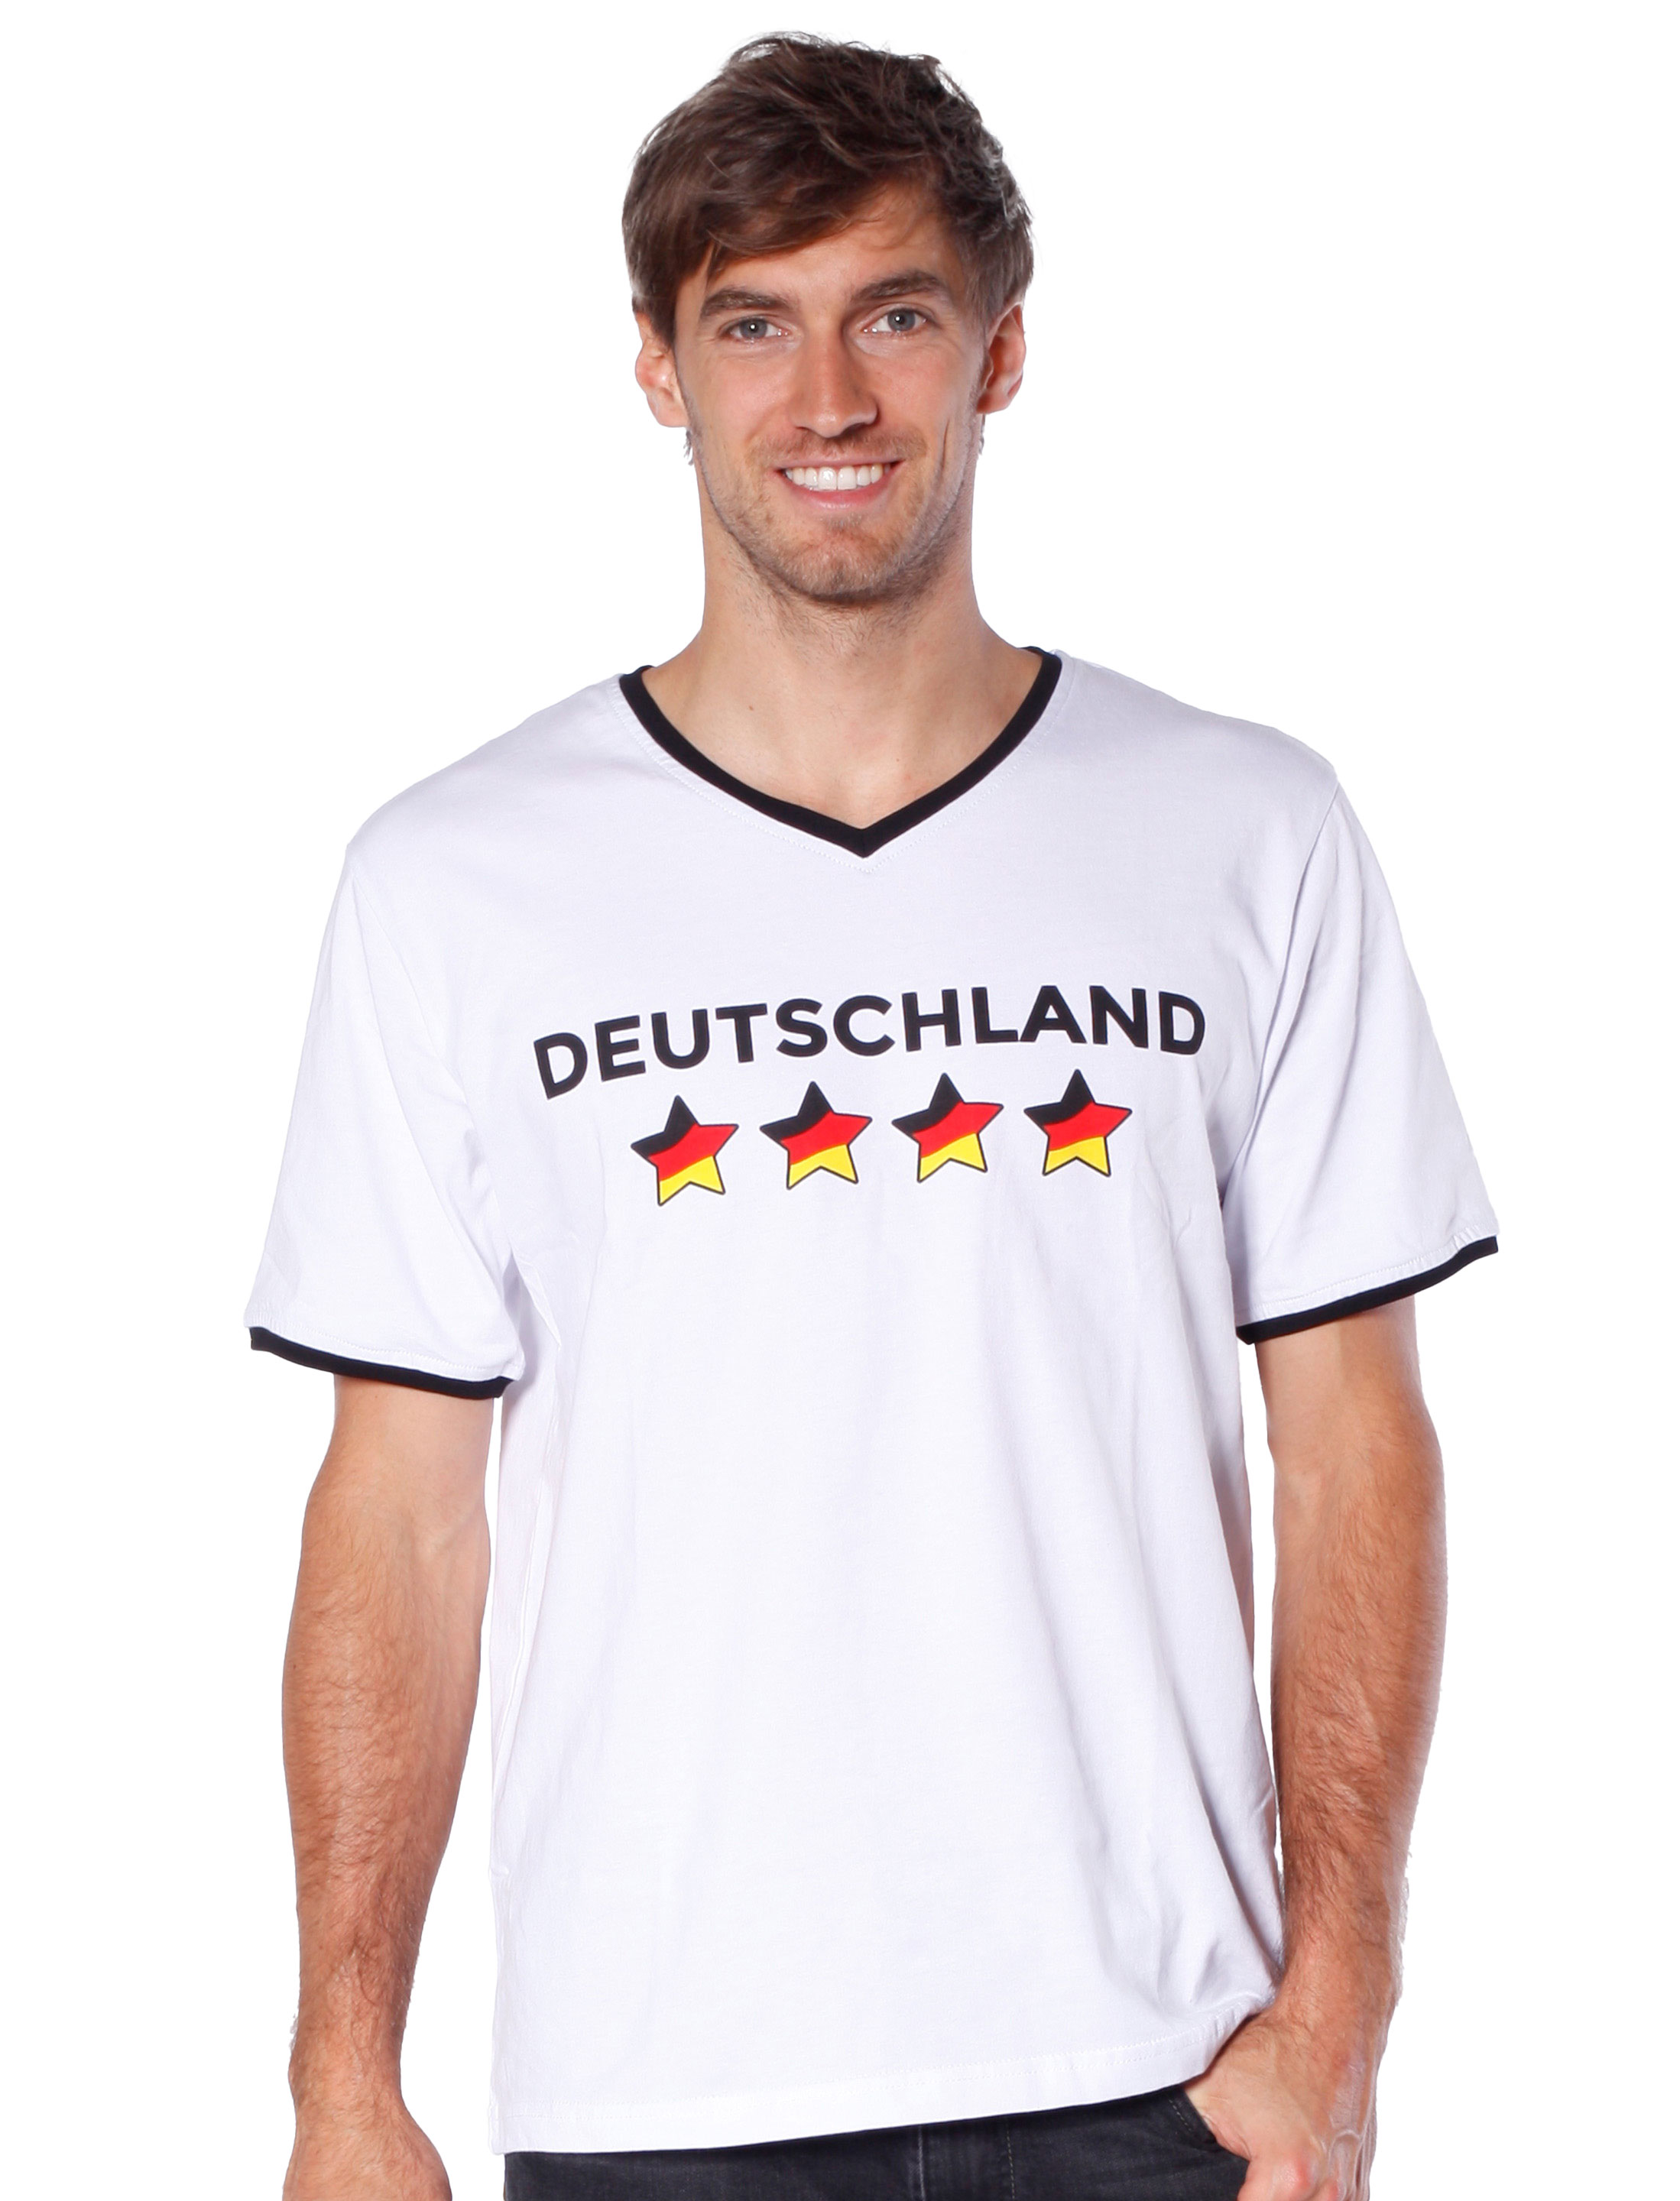 T-Shirt Deutschland Sterne Herren weiß S